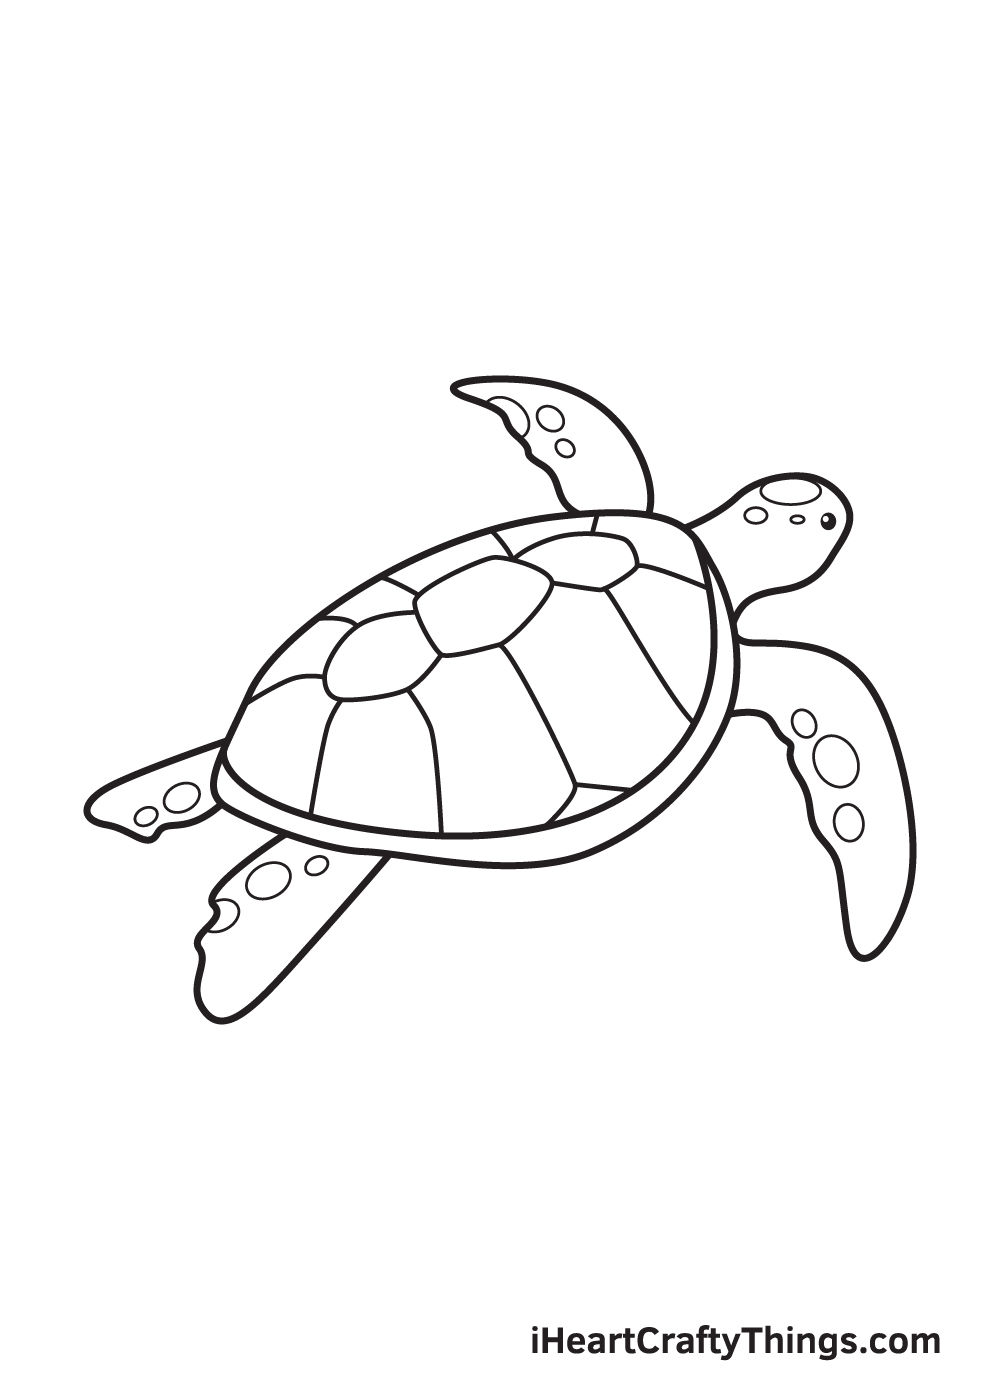 Retro Sea Turtle Illustration - Rob Knapp Design